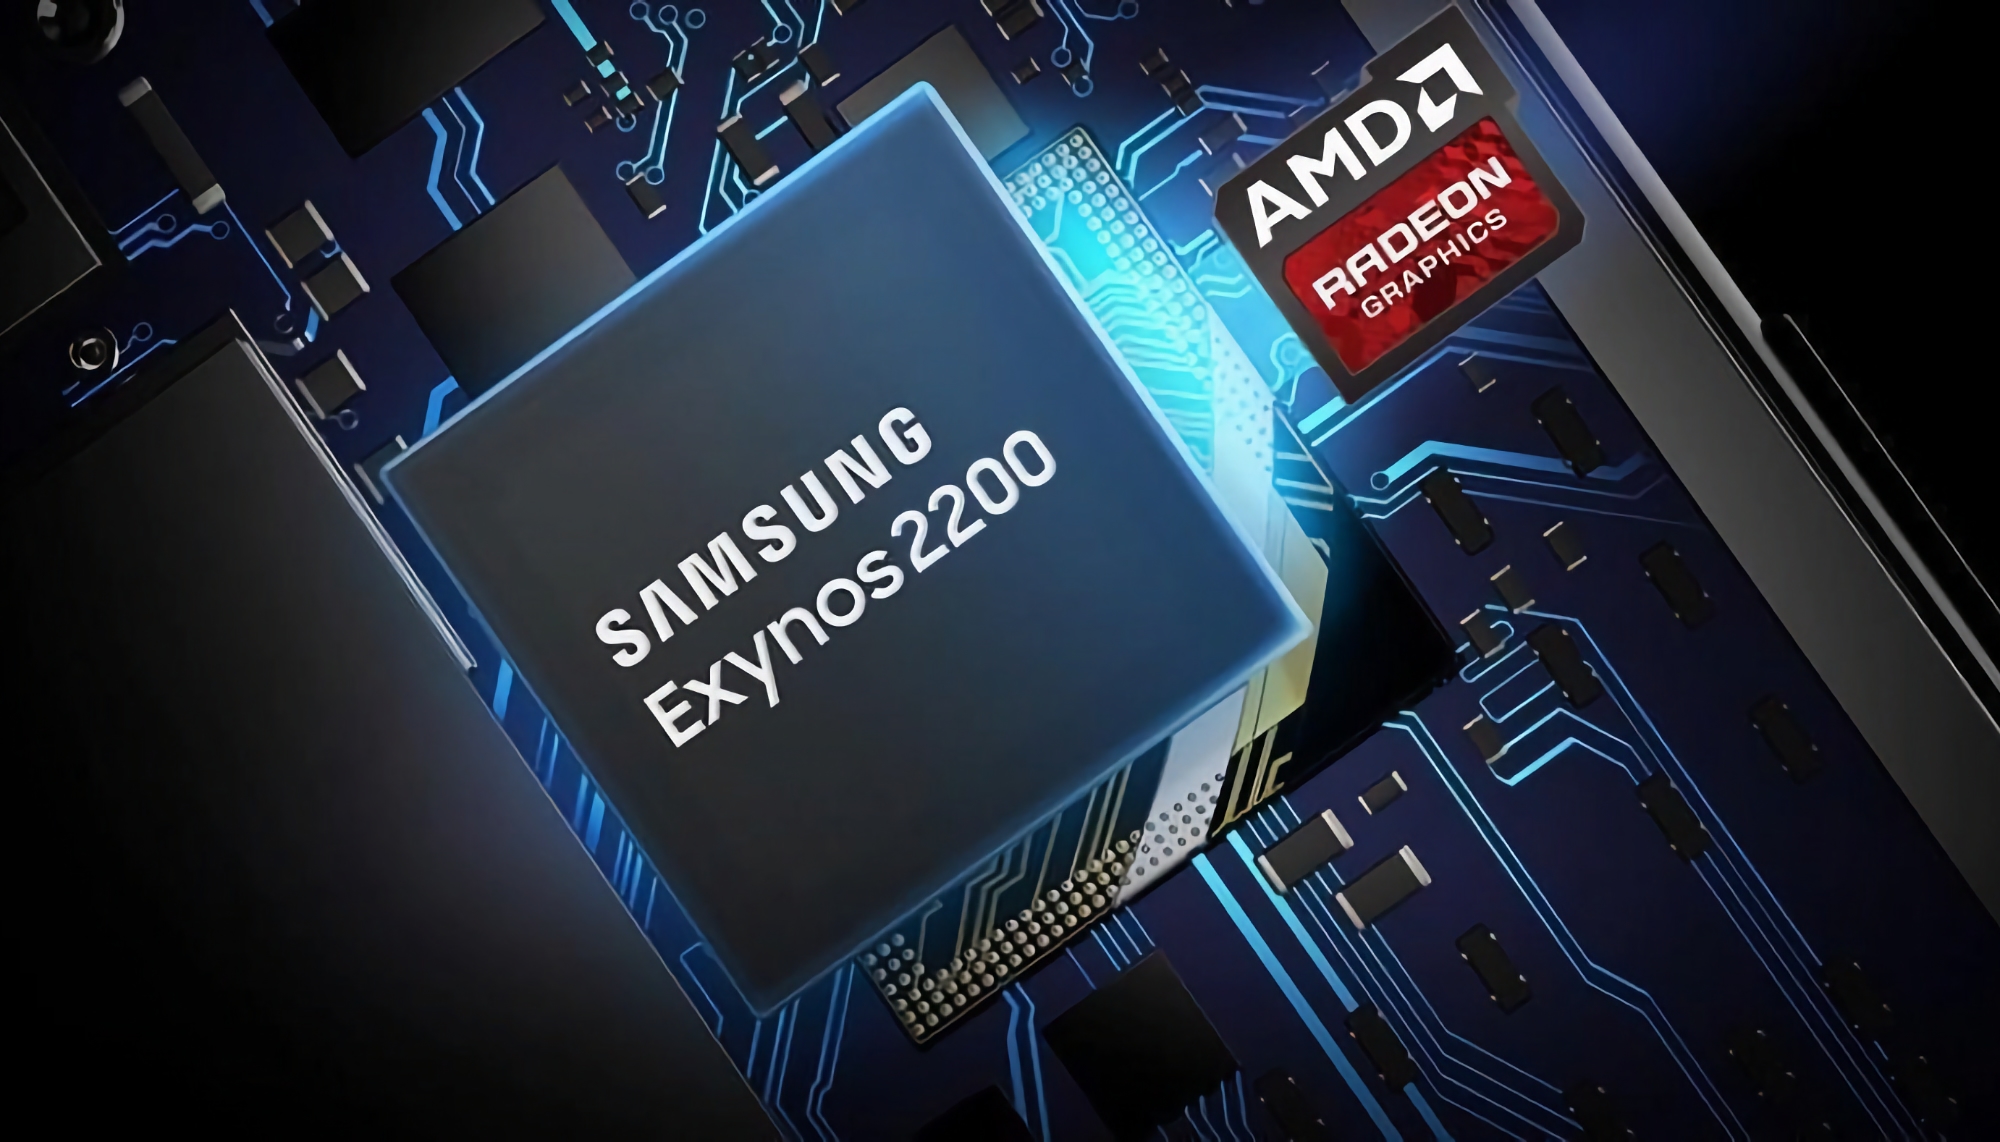 Insider: Samsung's mid-budget smartphones krijgen Exynos chips met AMD graphics